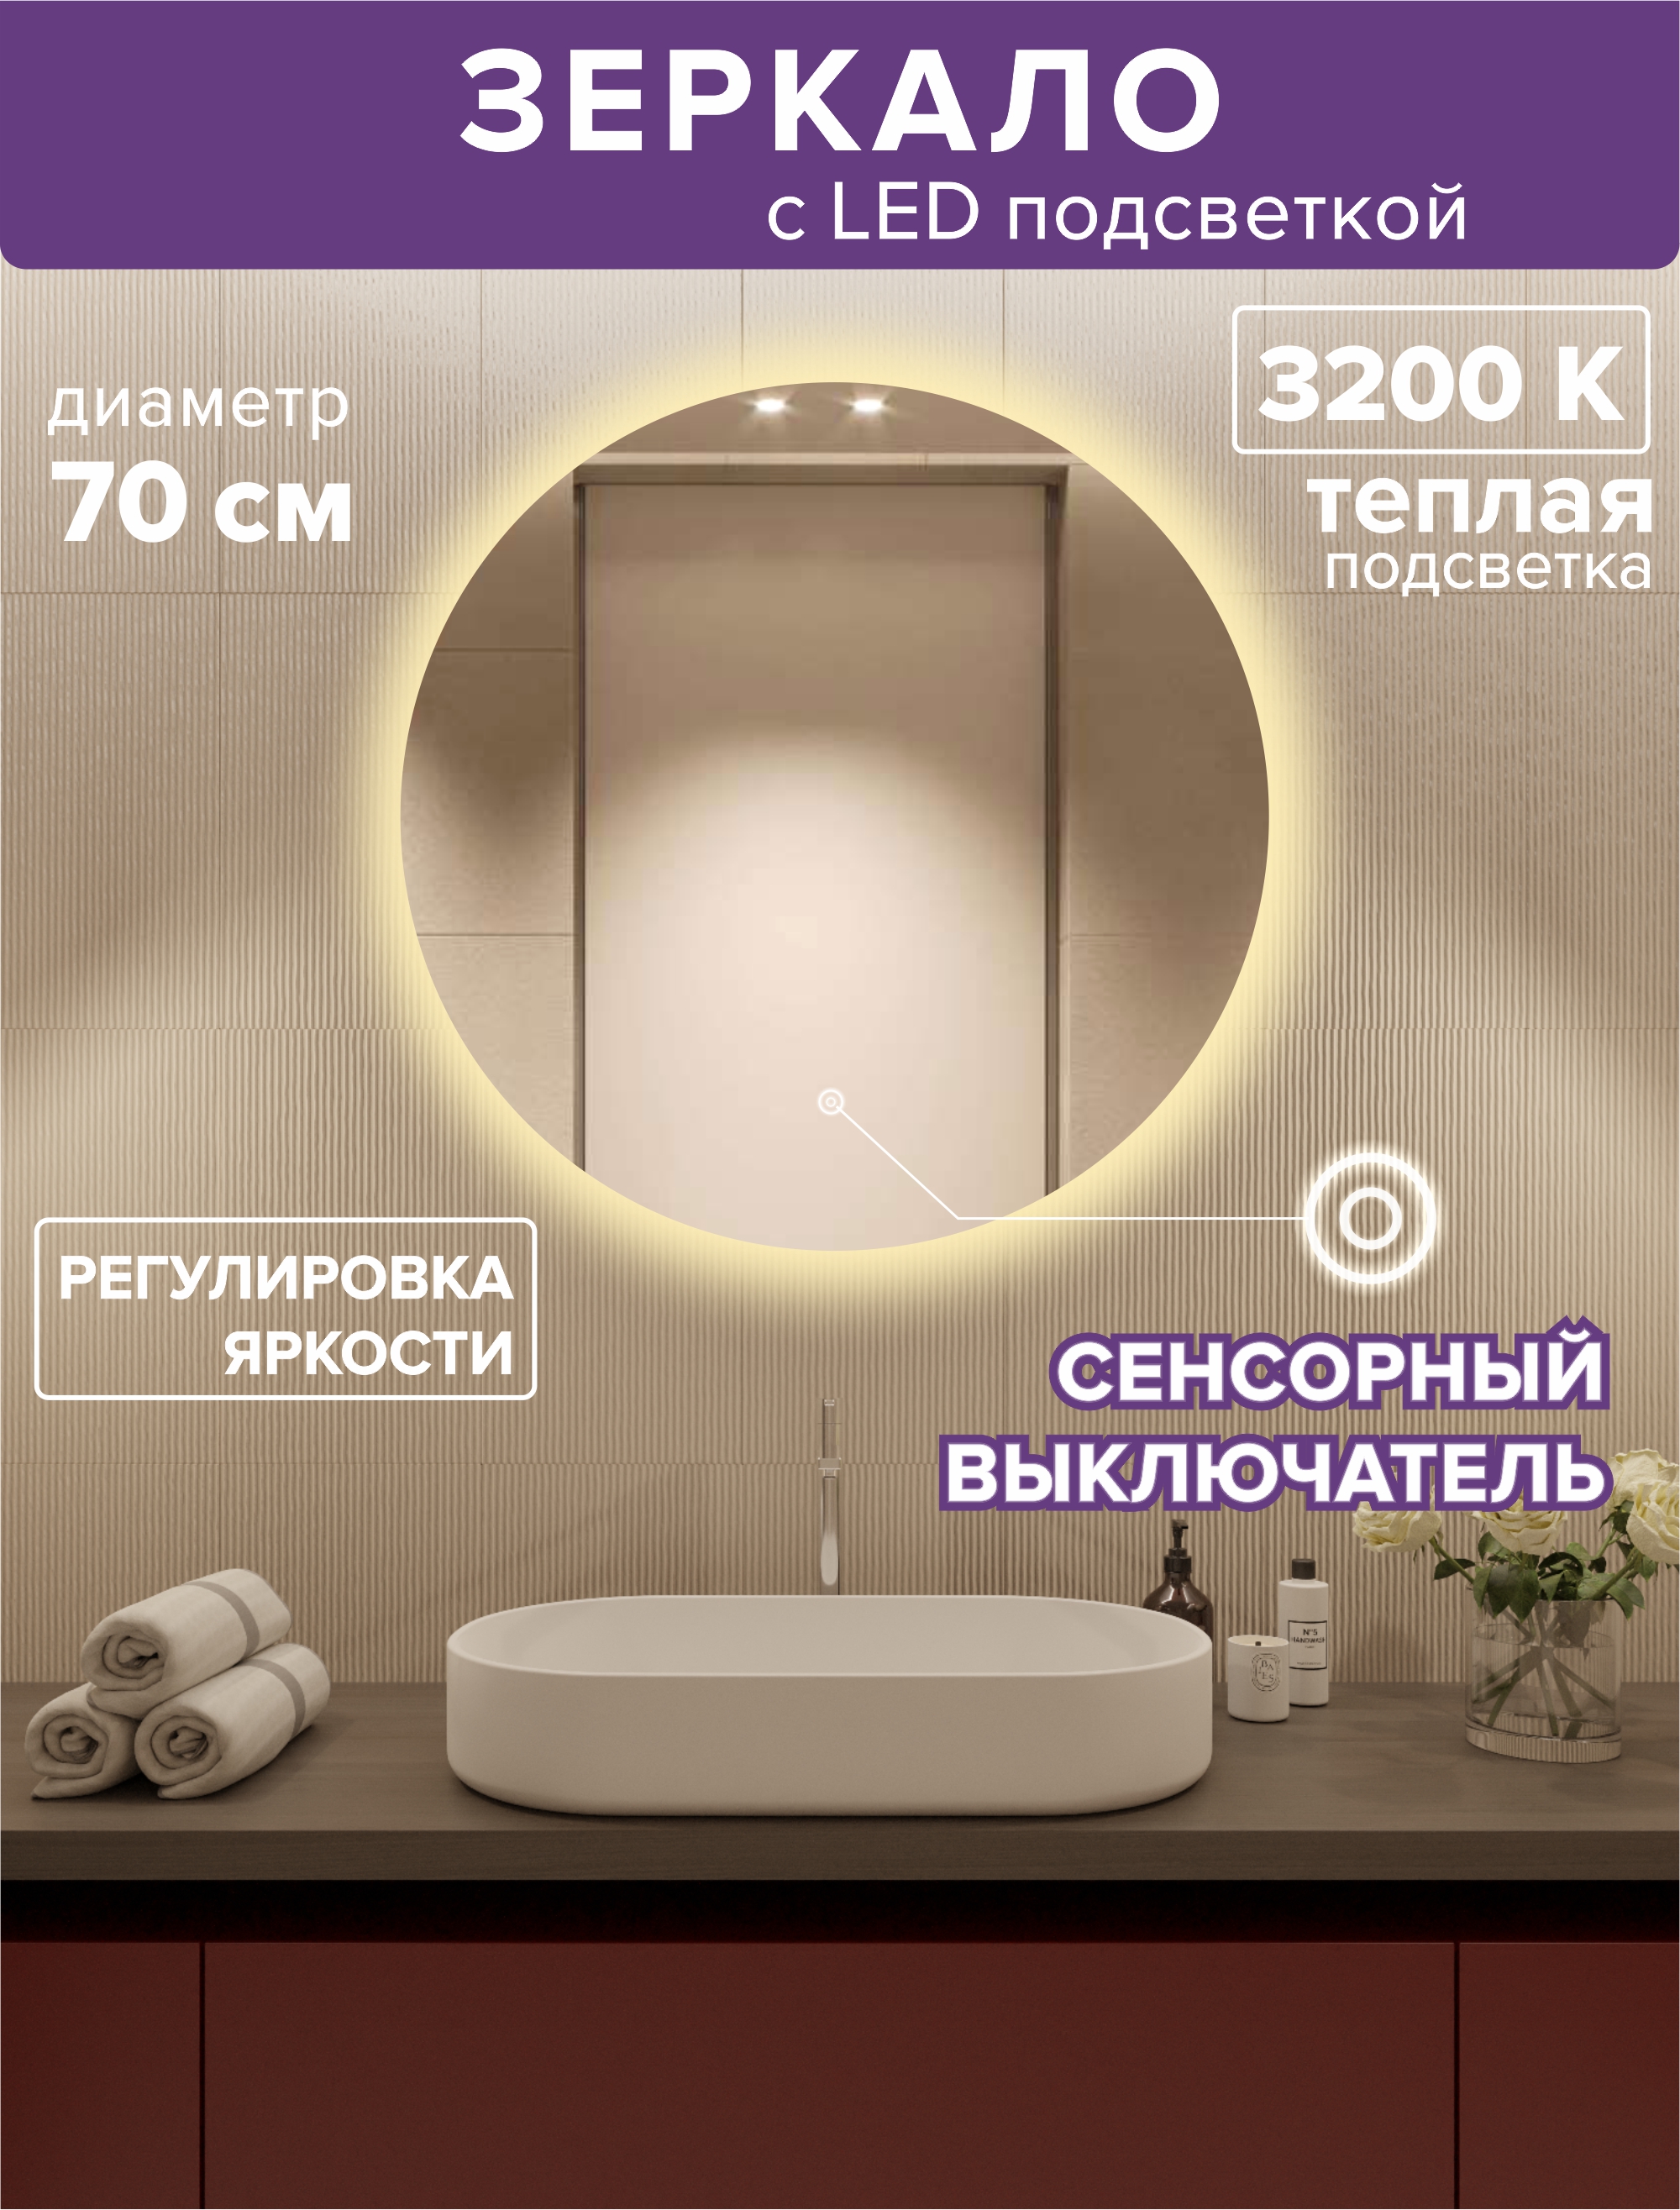 зеркало с подсветкой круглое 70см посдветка дневная 4200к Зеркало для ванной Alfa Mirrors с теплой подсветкой 3200К круглое 70см, арт. Na-7Na-7t